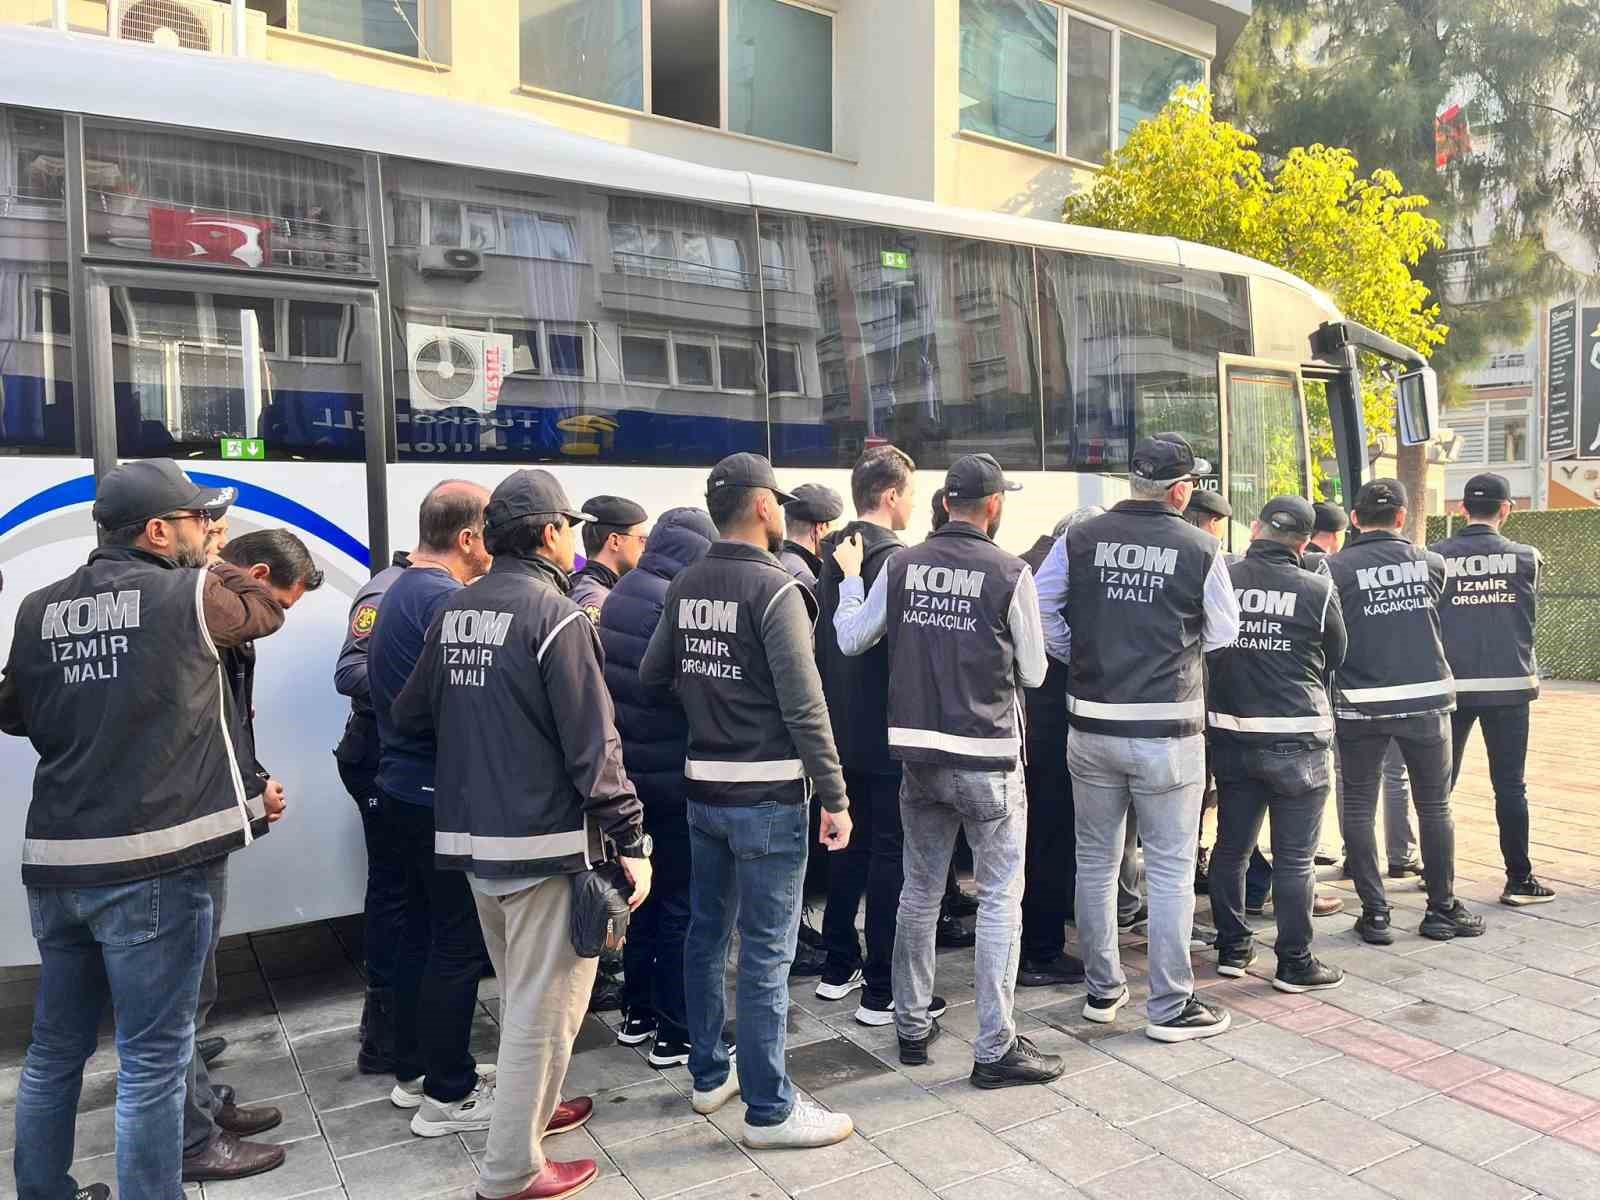 İzmir’de FETÖ’ye yönelik operasyonlar devam ediyor 84 kişi yakalandı